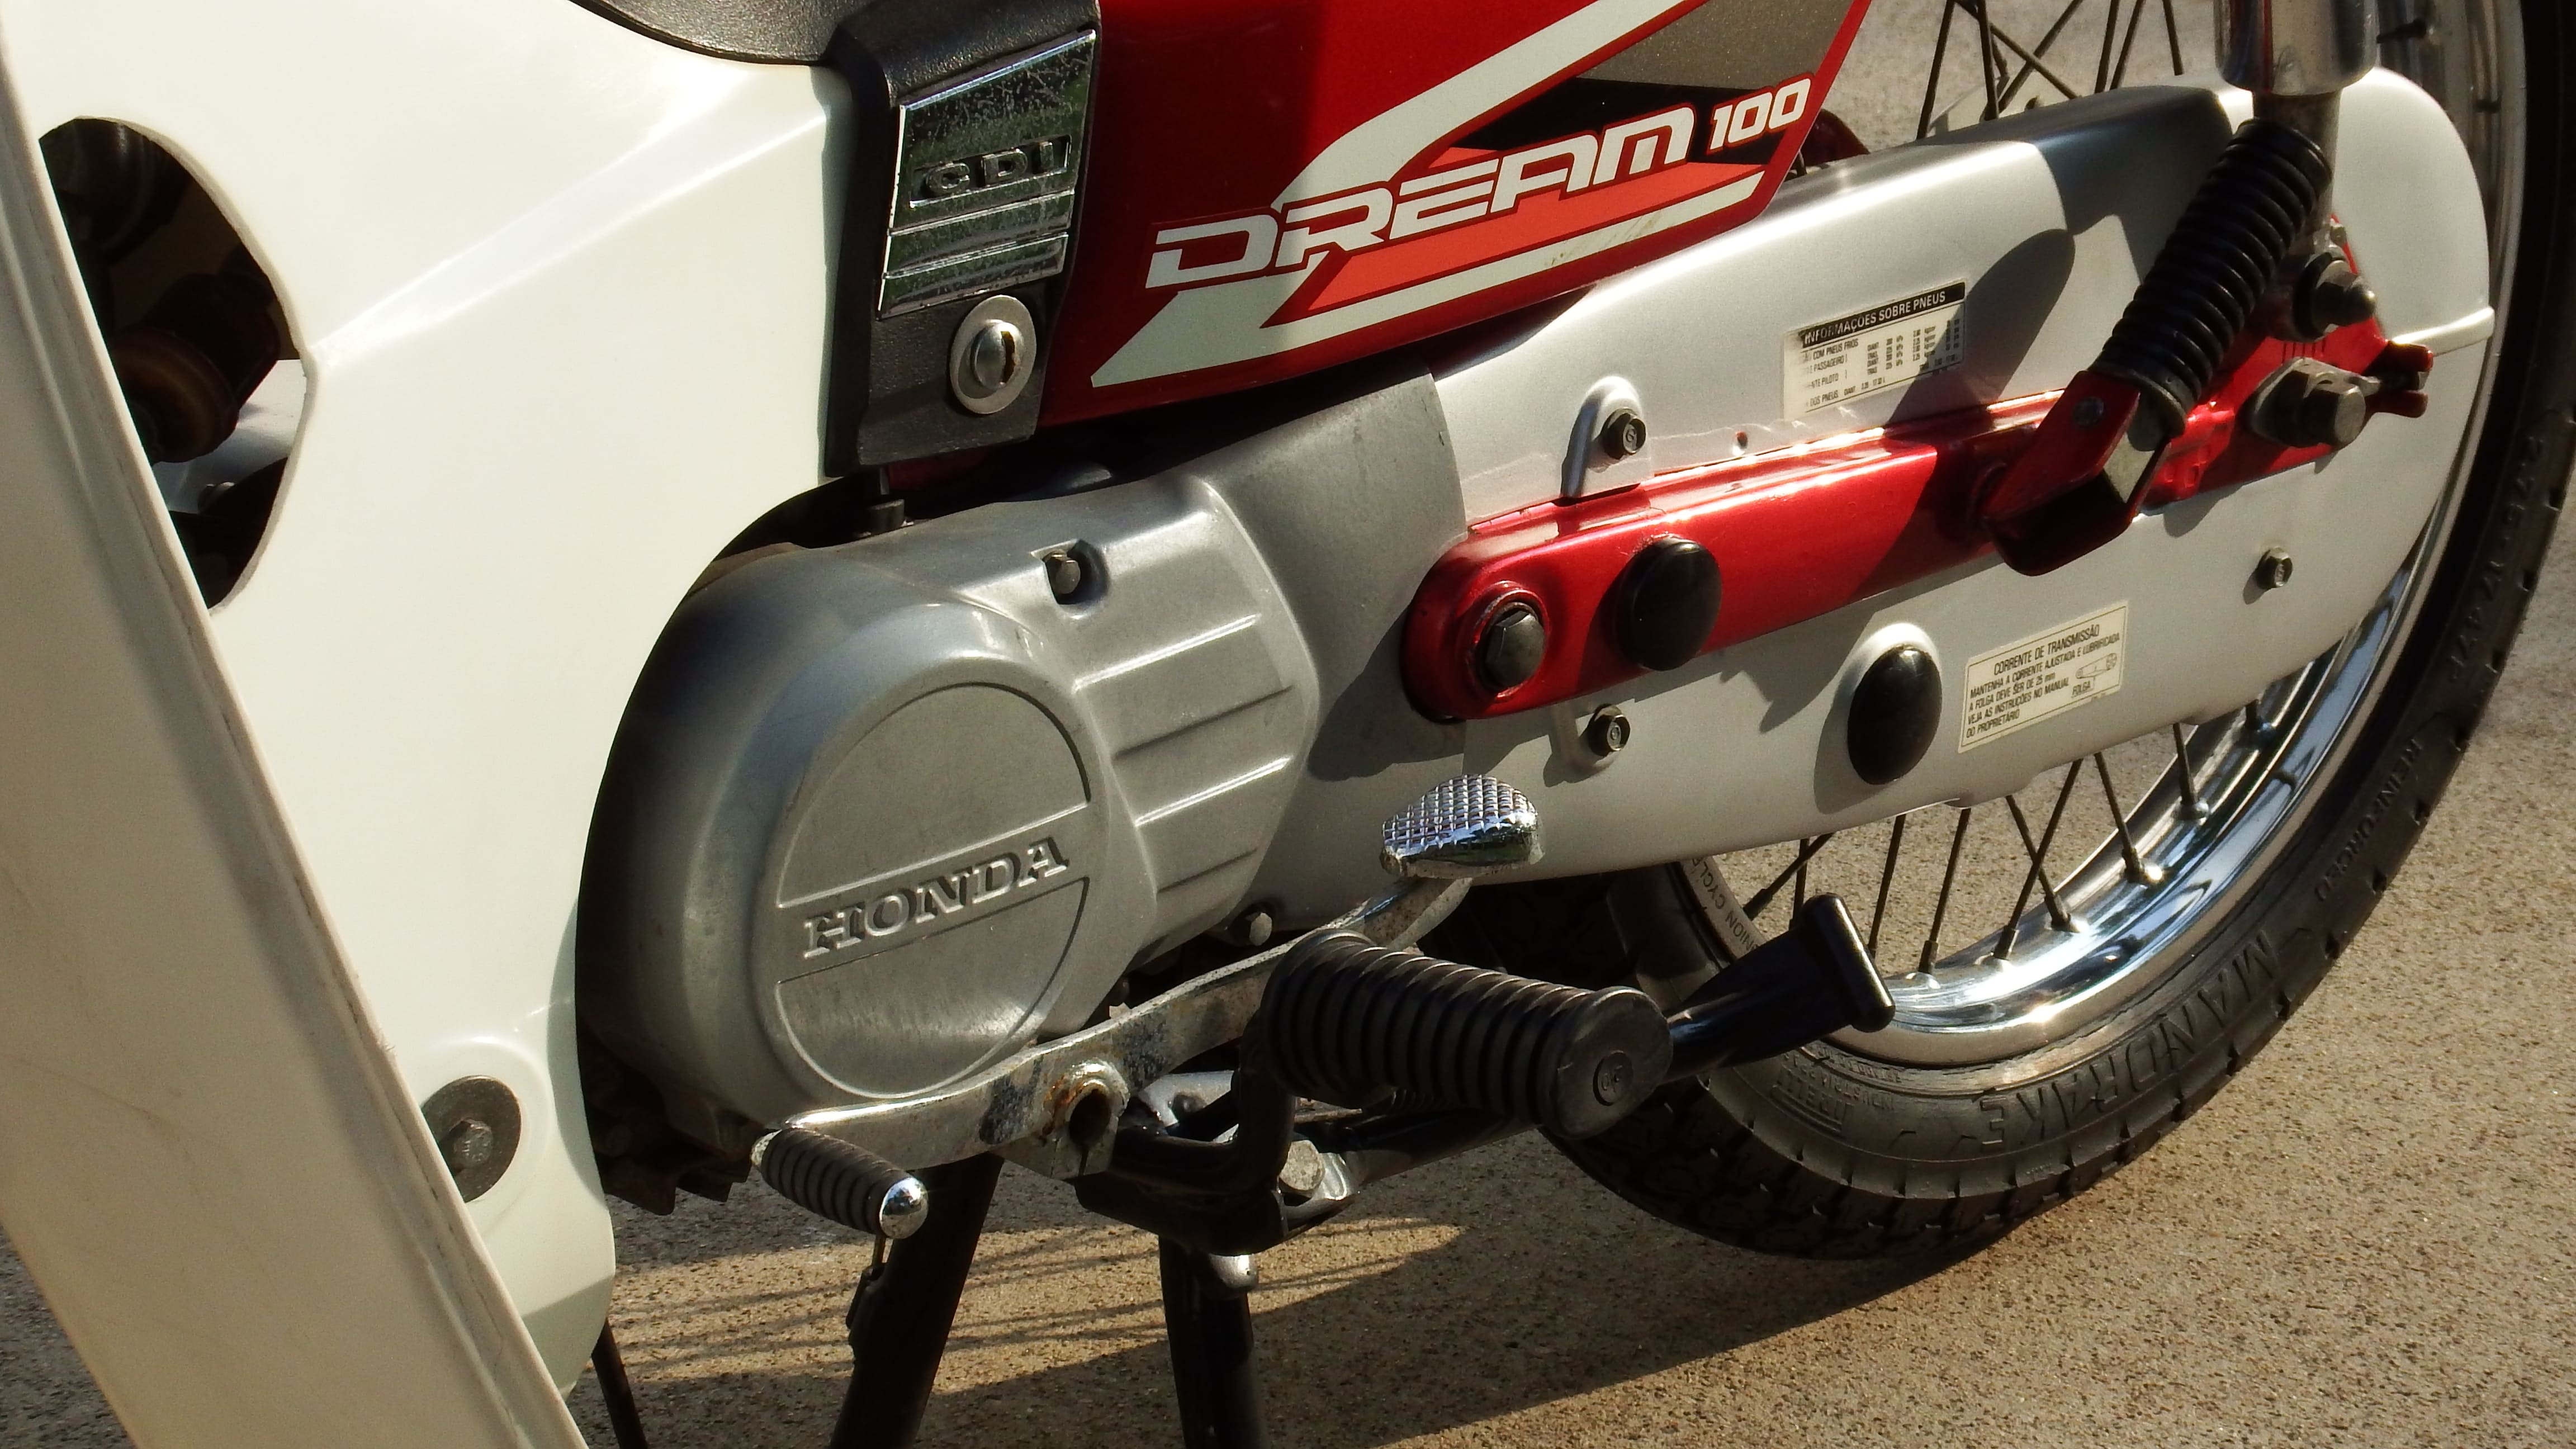 Moto Honda Dream 100 Vermelha Detalhe da Transmissão